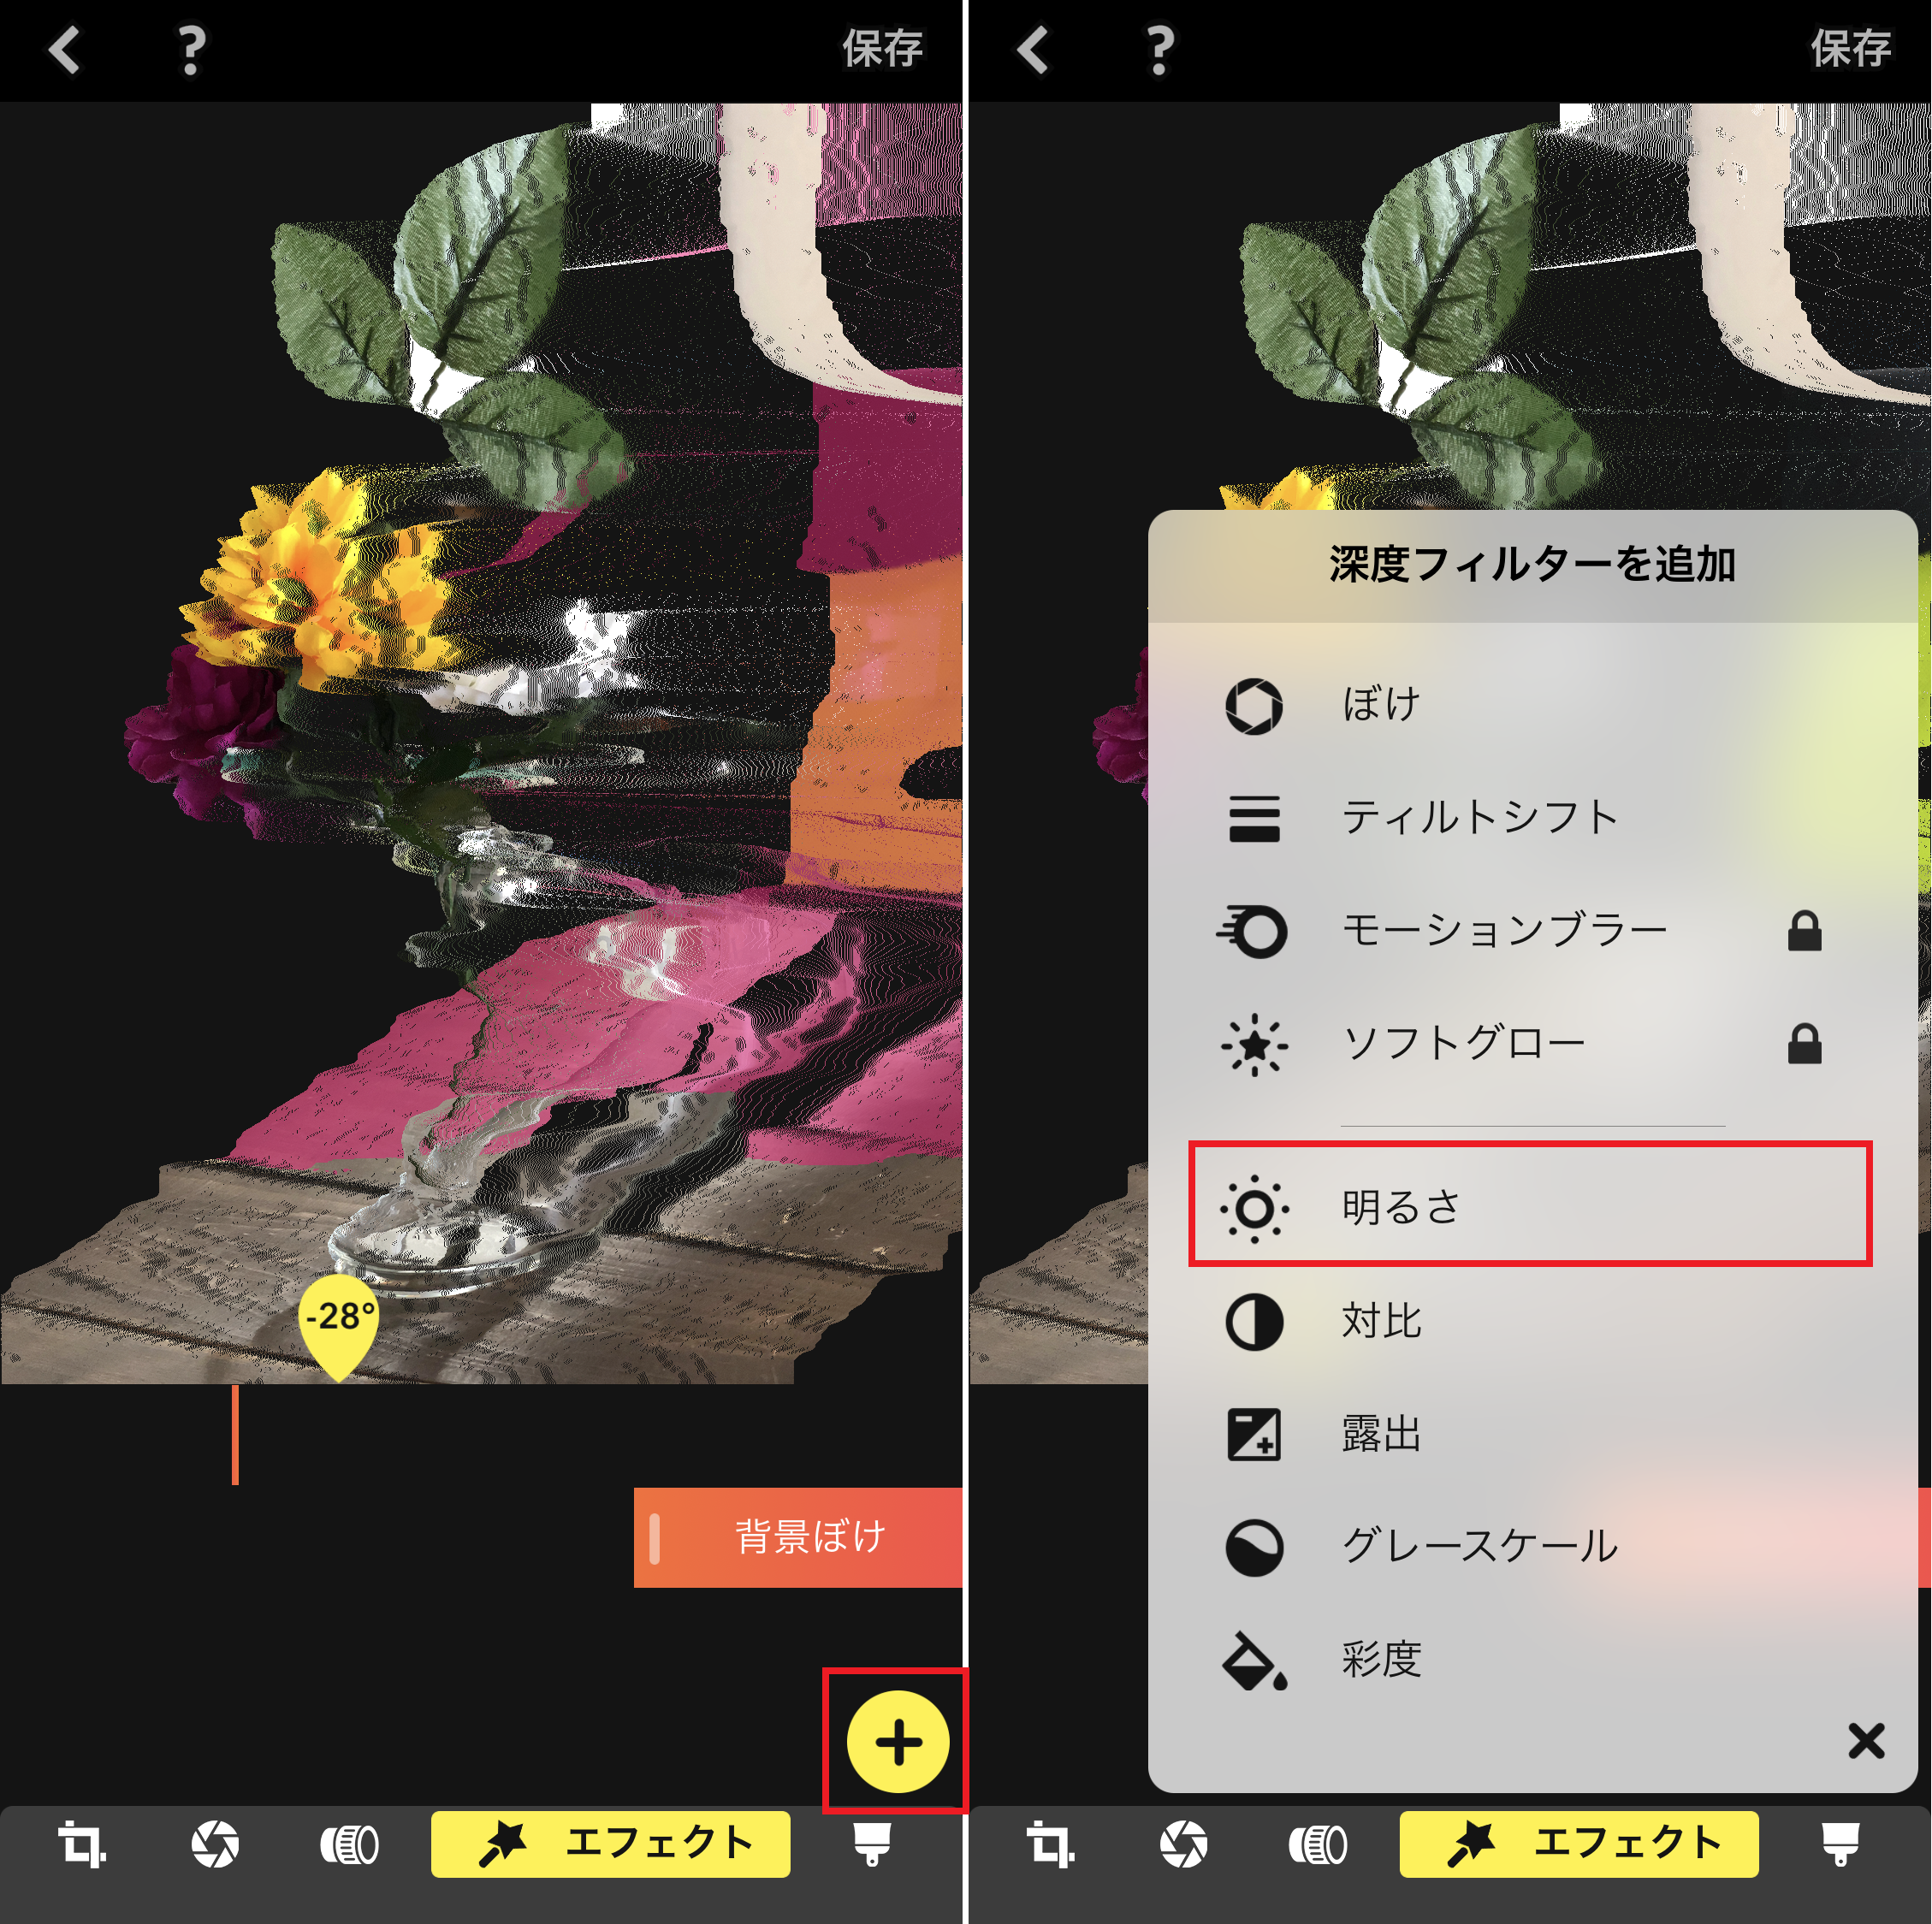 ポートレートモードで撮った写真をさらにかっこよくする裏ワザ Iphone Tips Engadget 日本版